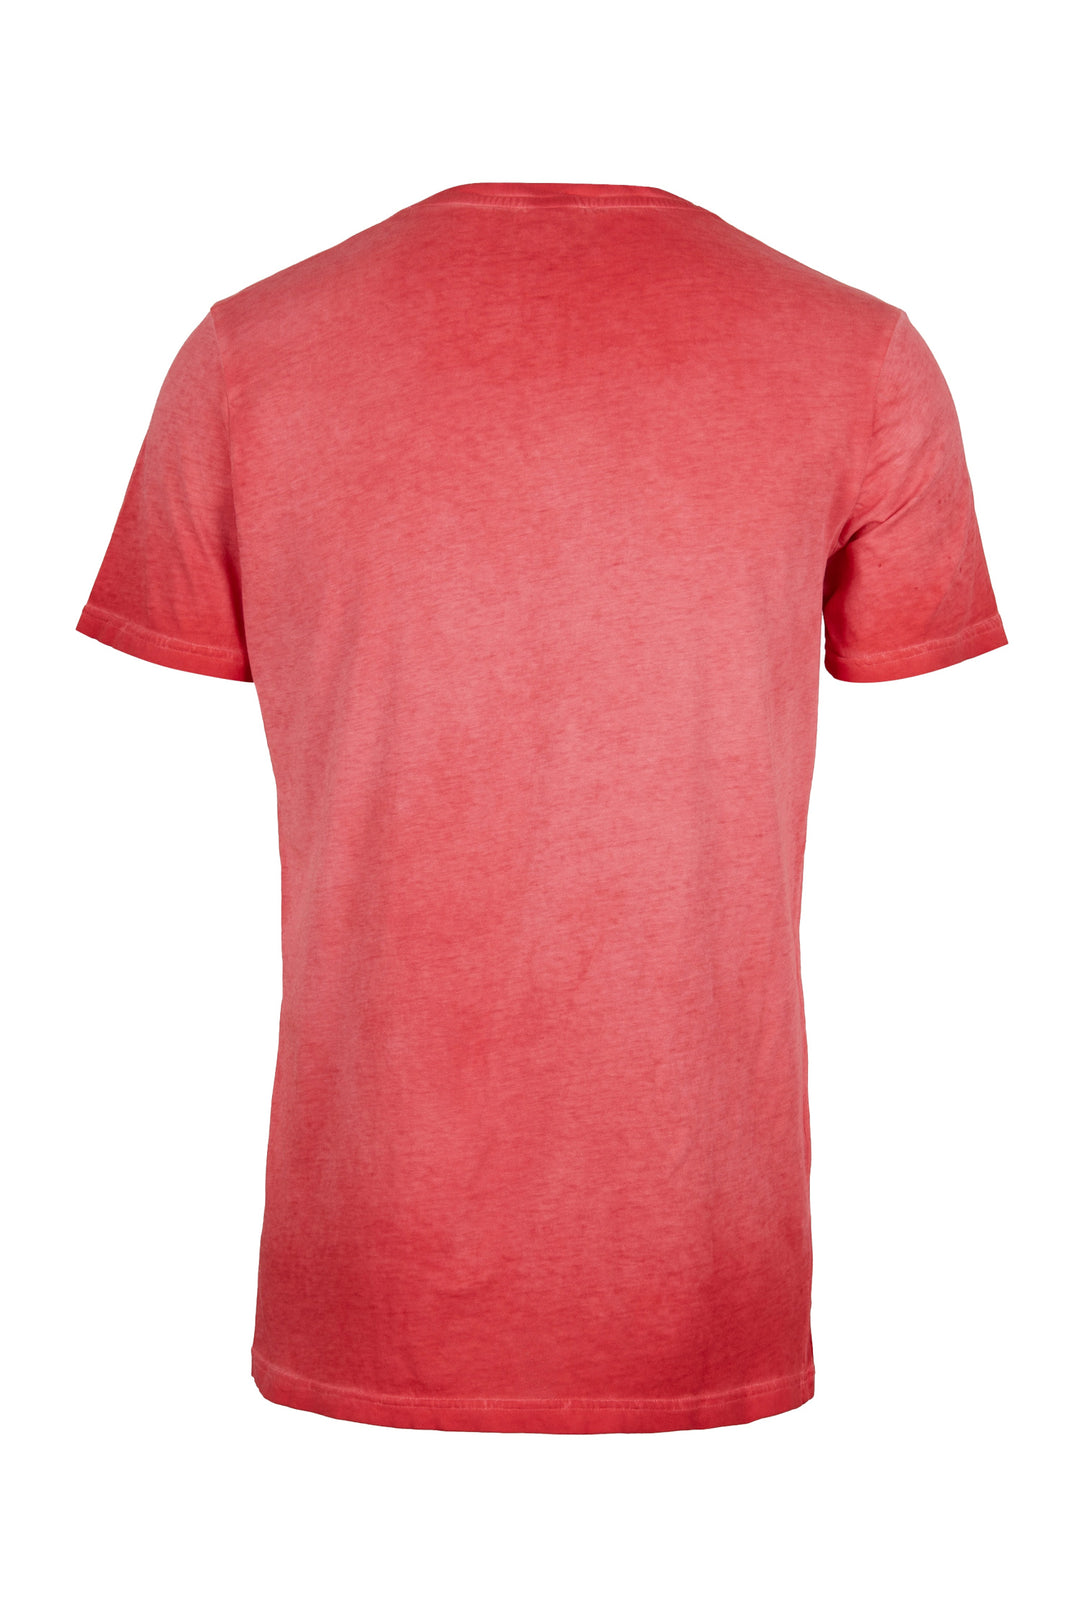 GALLO T-shirt cotone rosso tinta unita - Mancinelli 1954